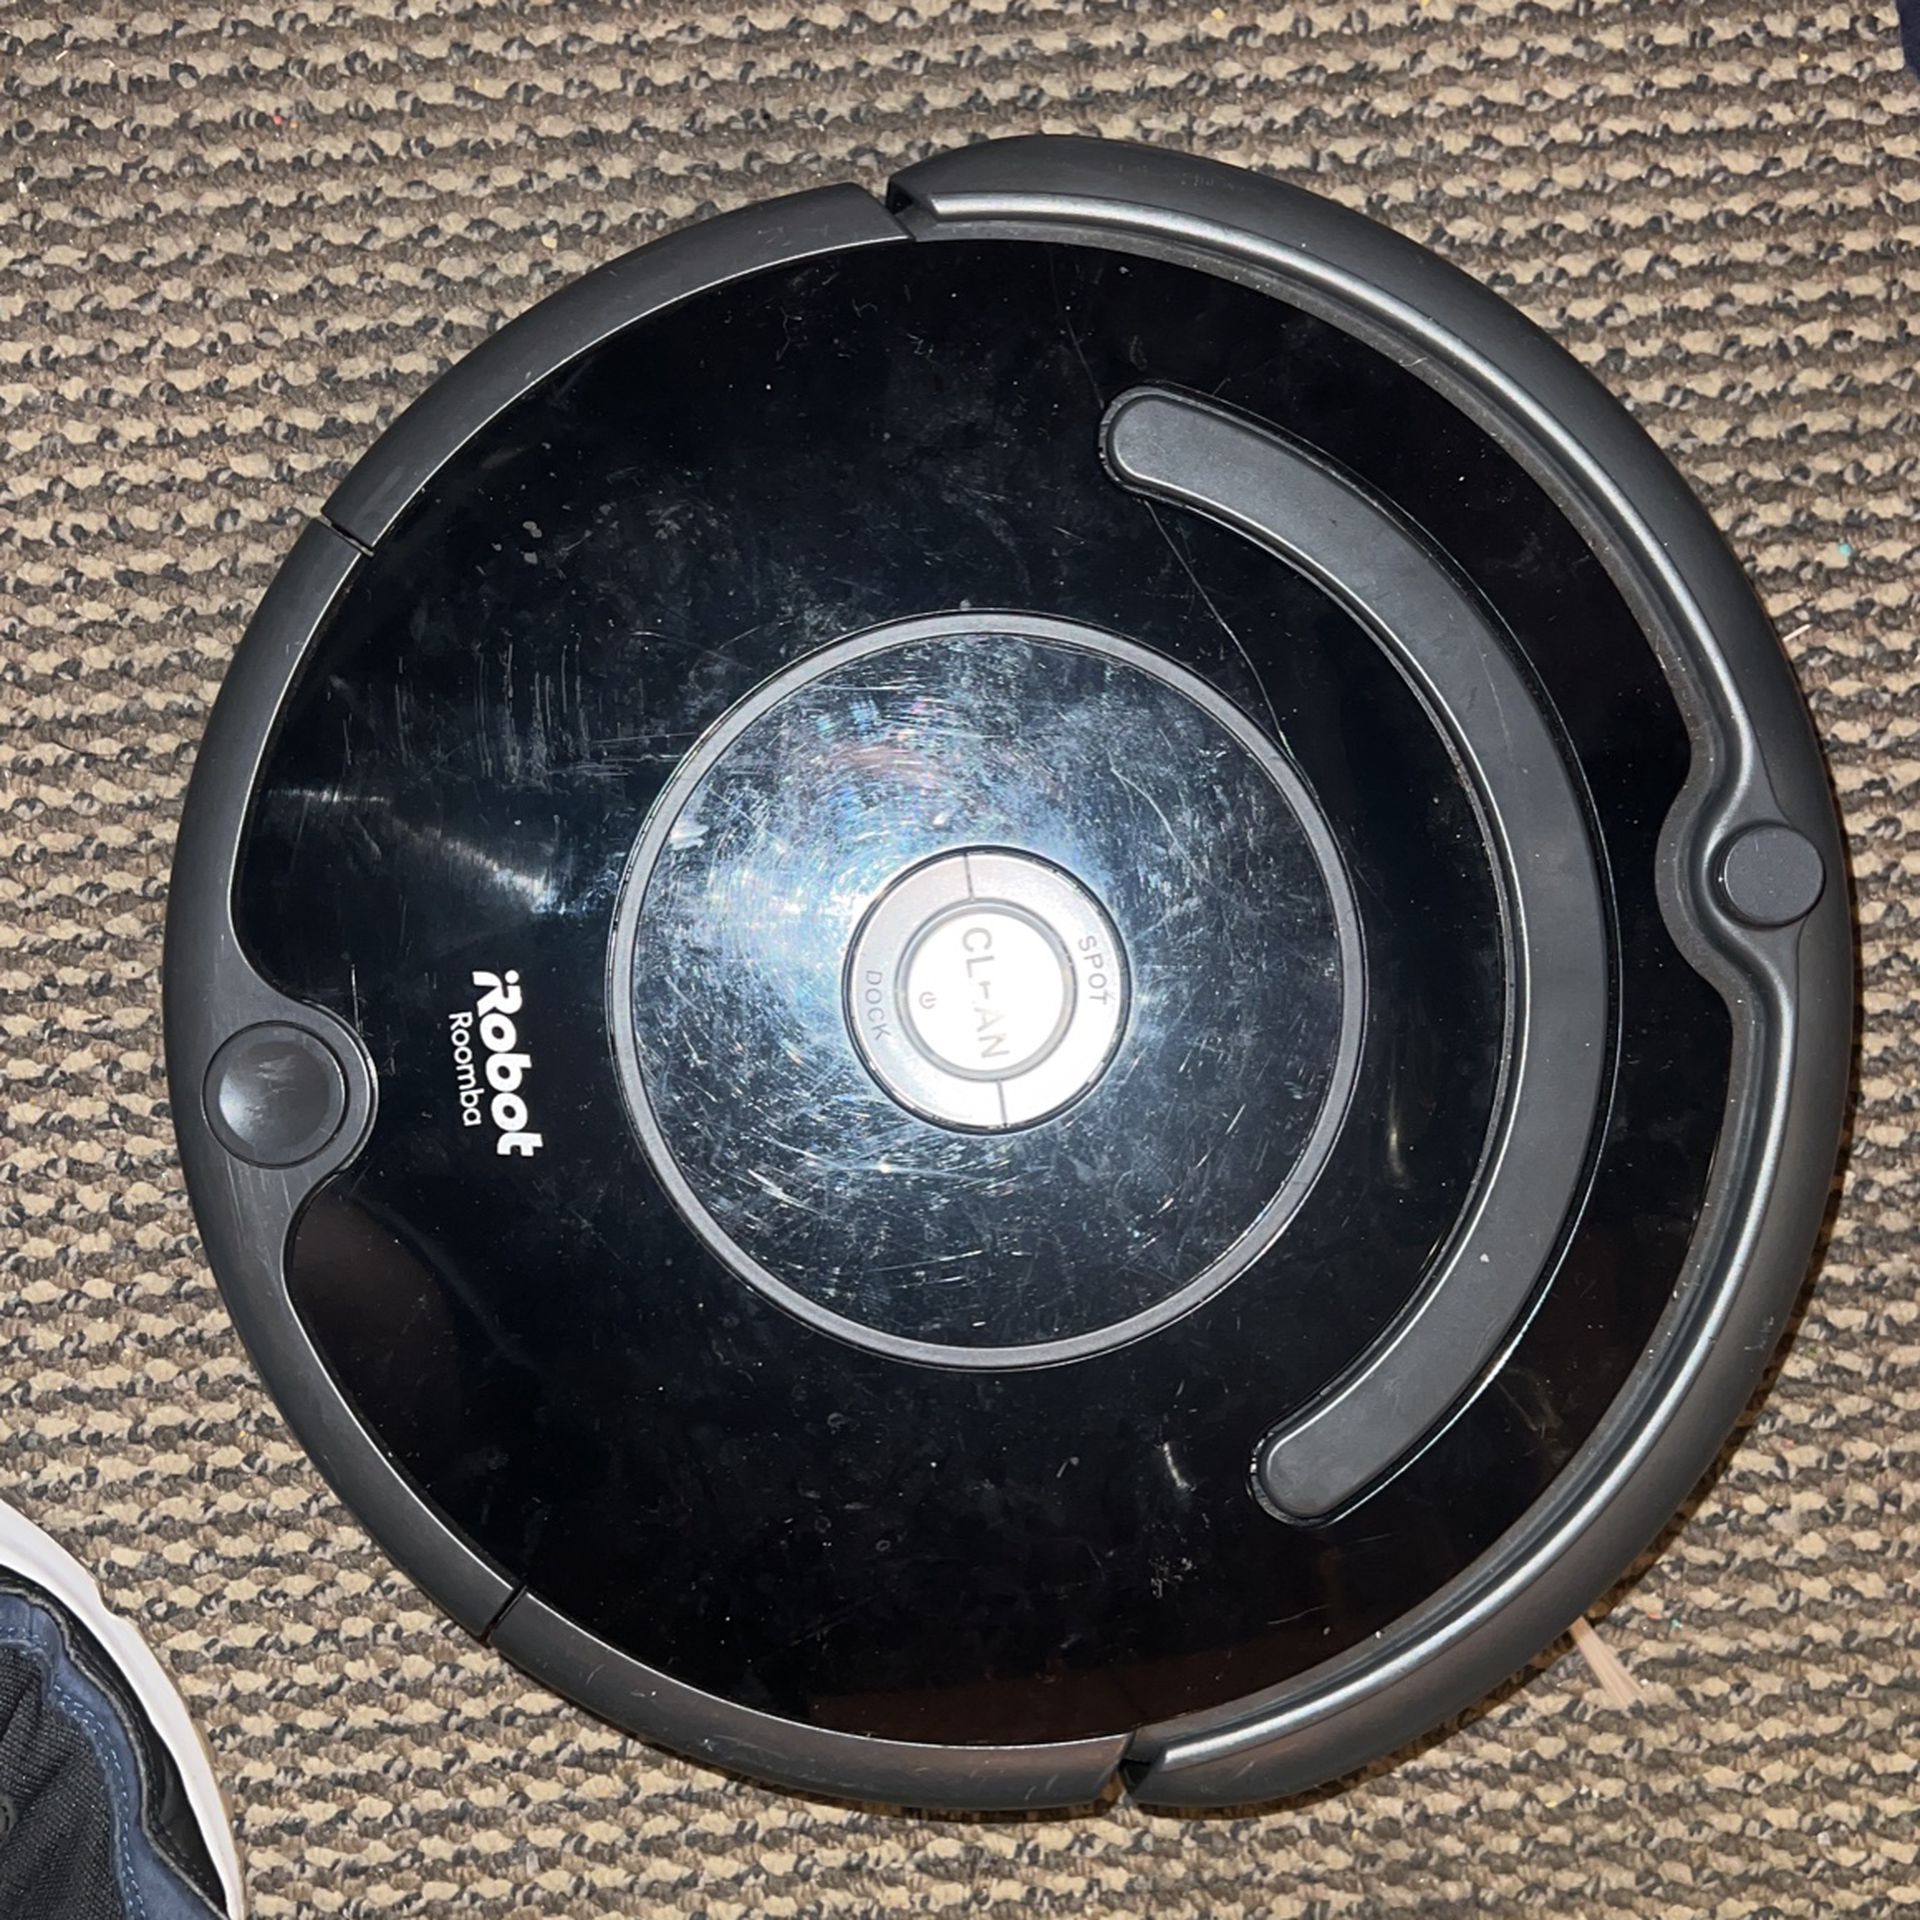 2019 iRobot Roomba Vacuum